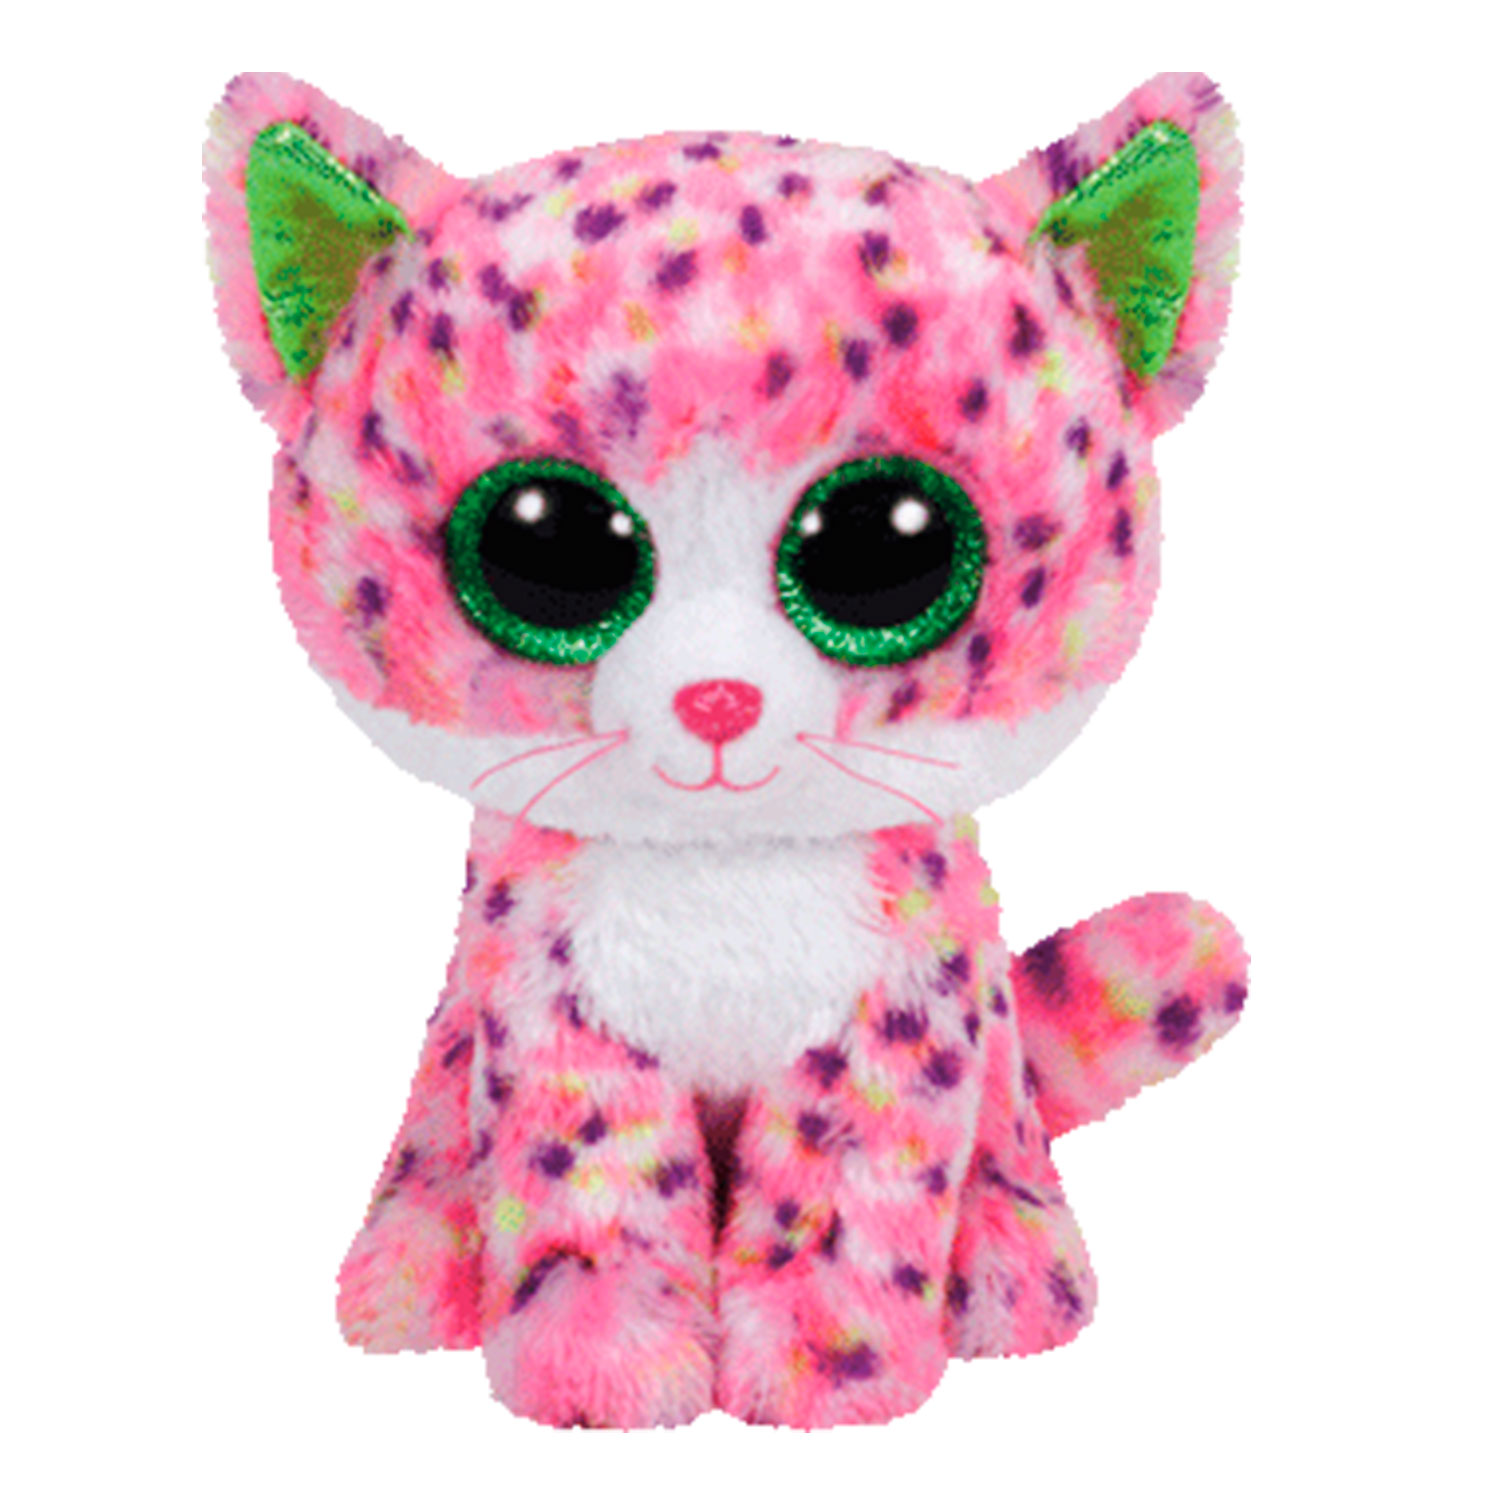 Включи глазастик. Beanie Boo's котенок Sophie розовый, 15 см. Мягкая игрушка ty Beanie Boos котёнок Sophie 15 см. Игрушки бини Боос. Глазастики Beanie Boo's белый кот.